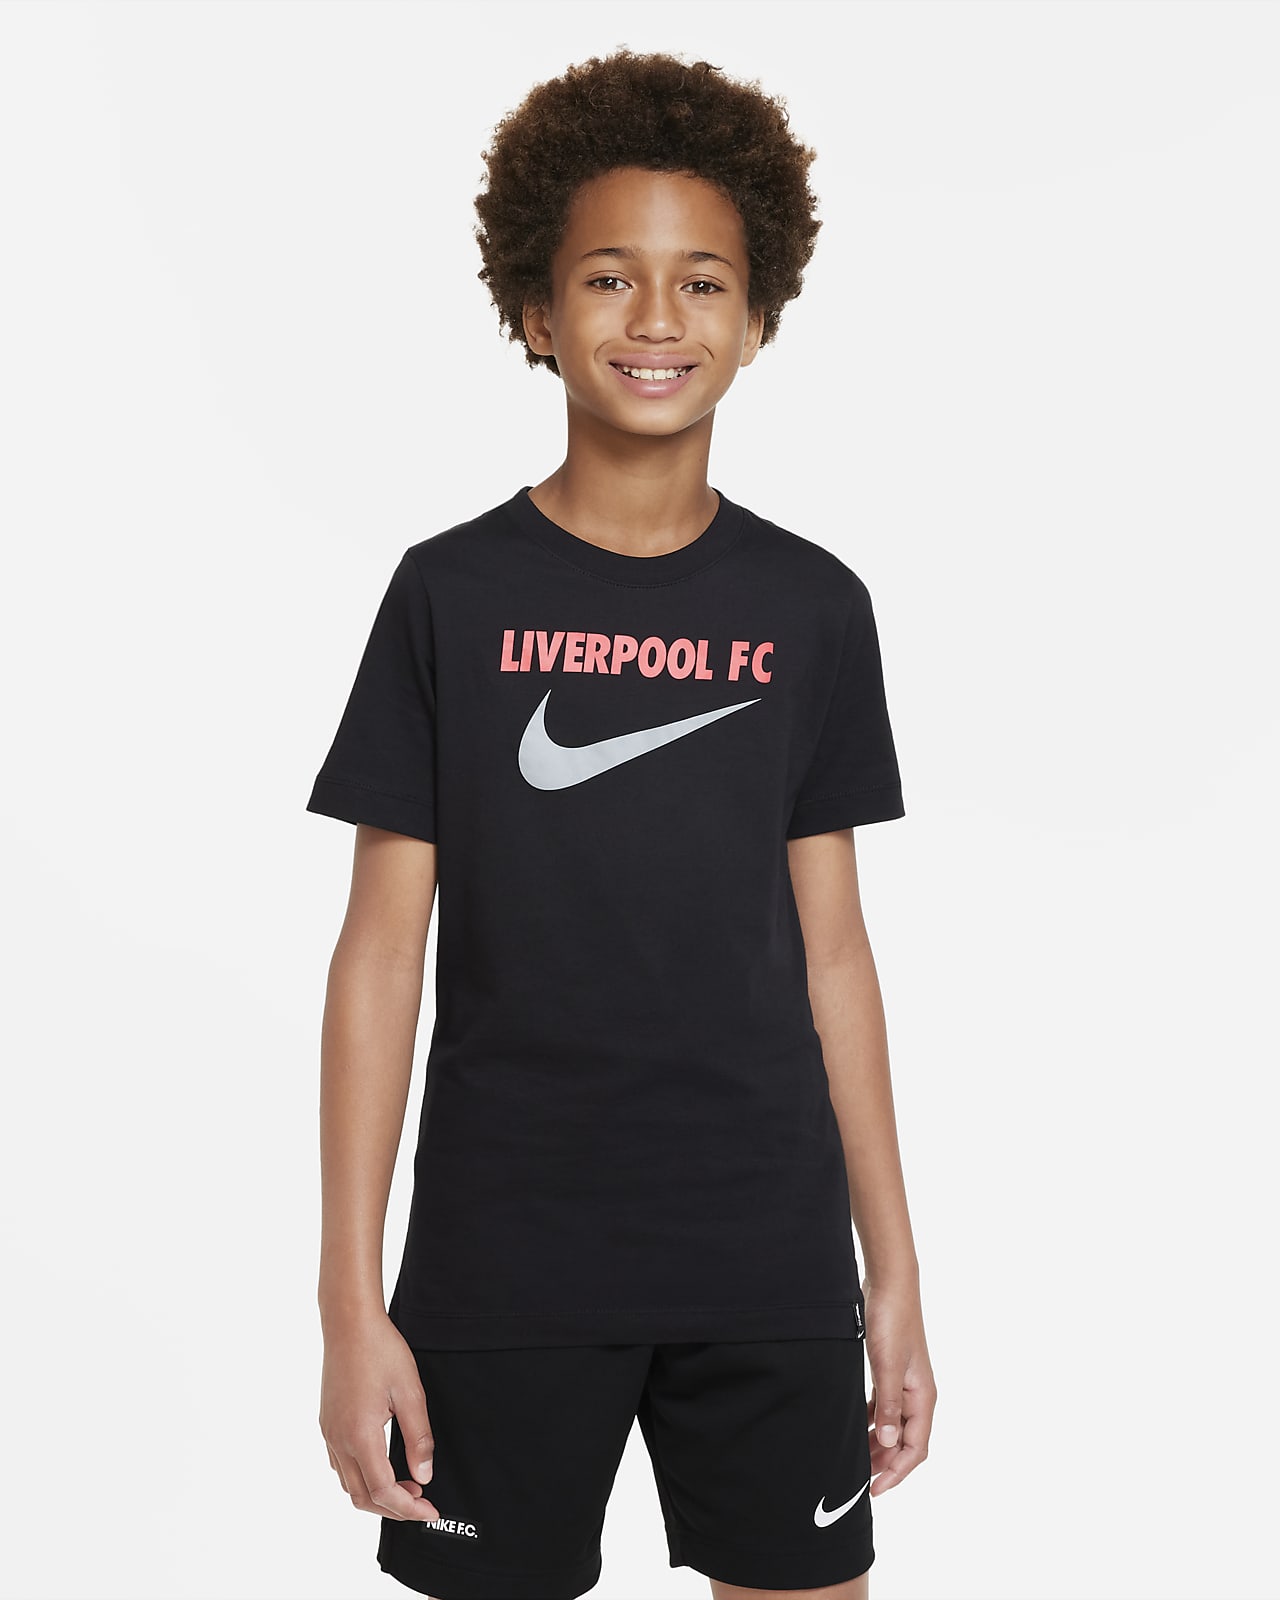 Nike公式 リバプール Fc スウッシュ ジュニア サッカー Tシャツ オンラインストア 通販サイト